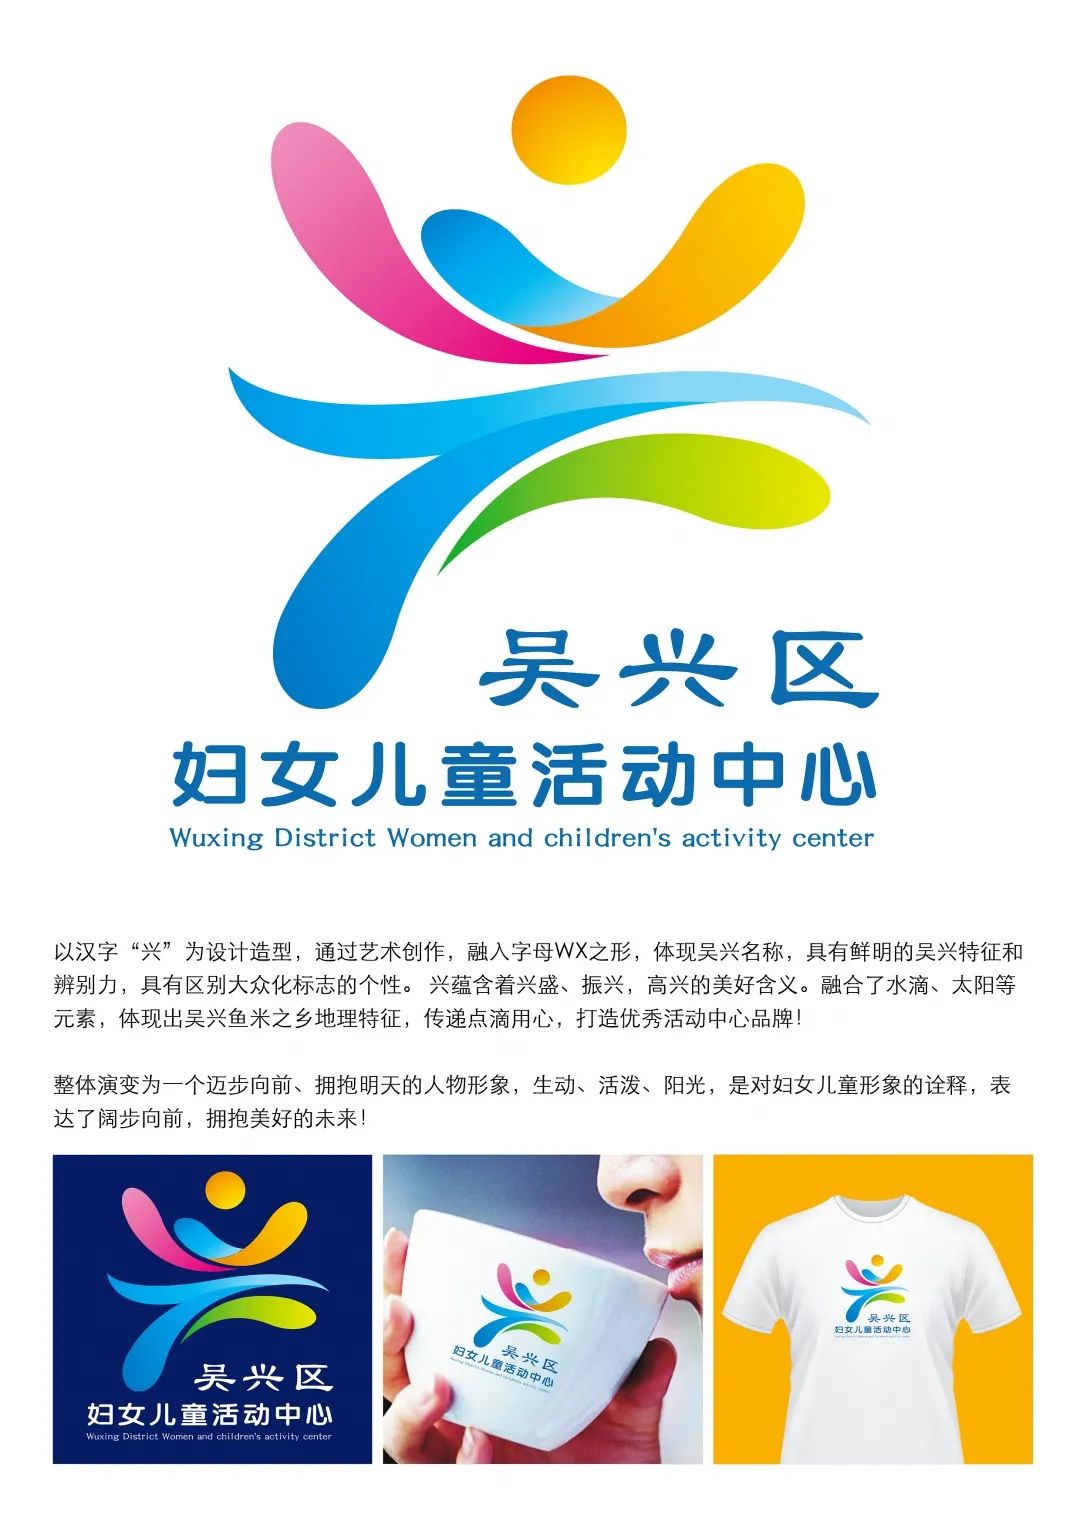 关注吴兴区妇儿活动中心logo正式公布